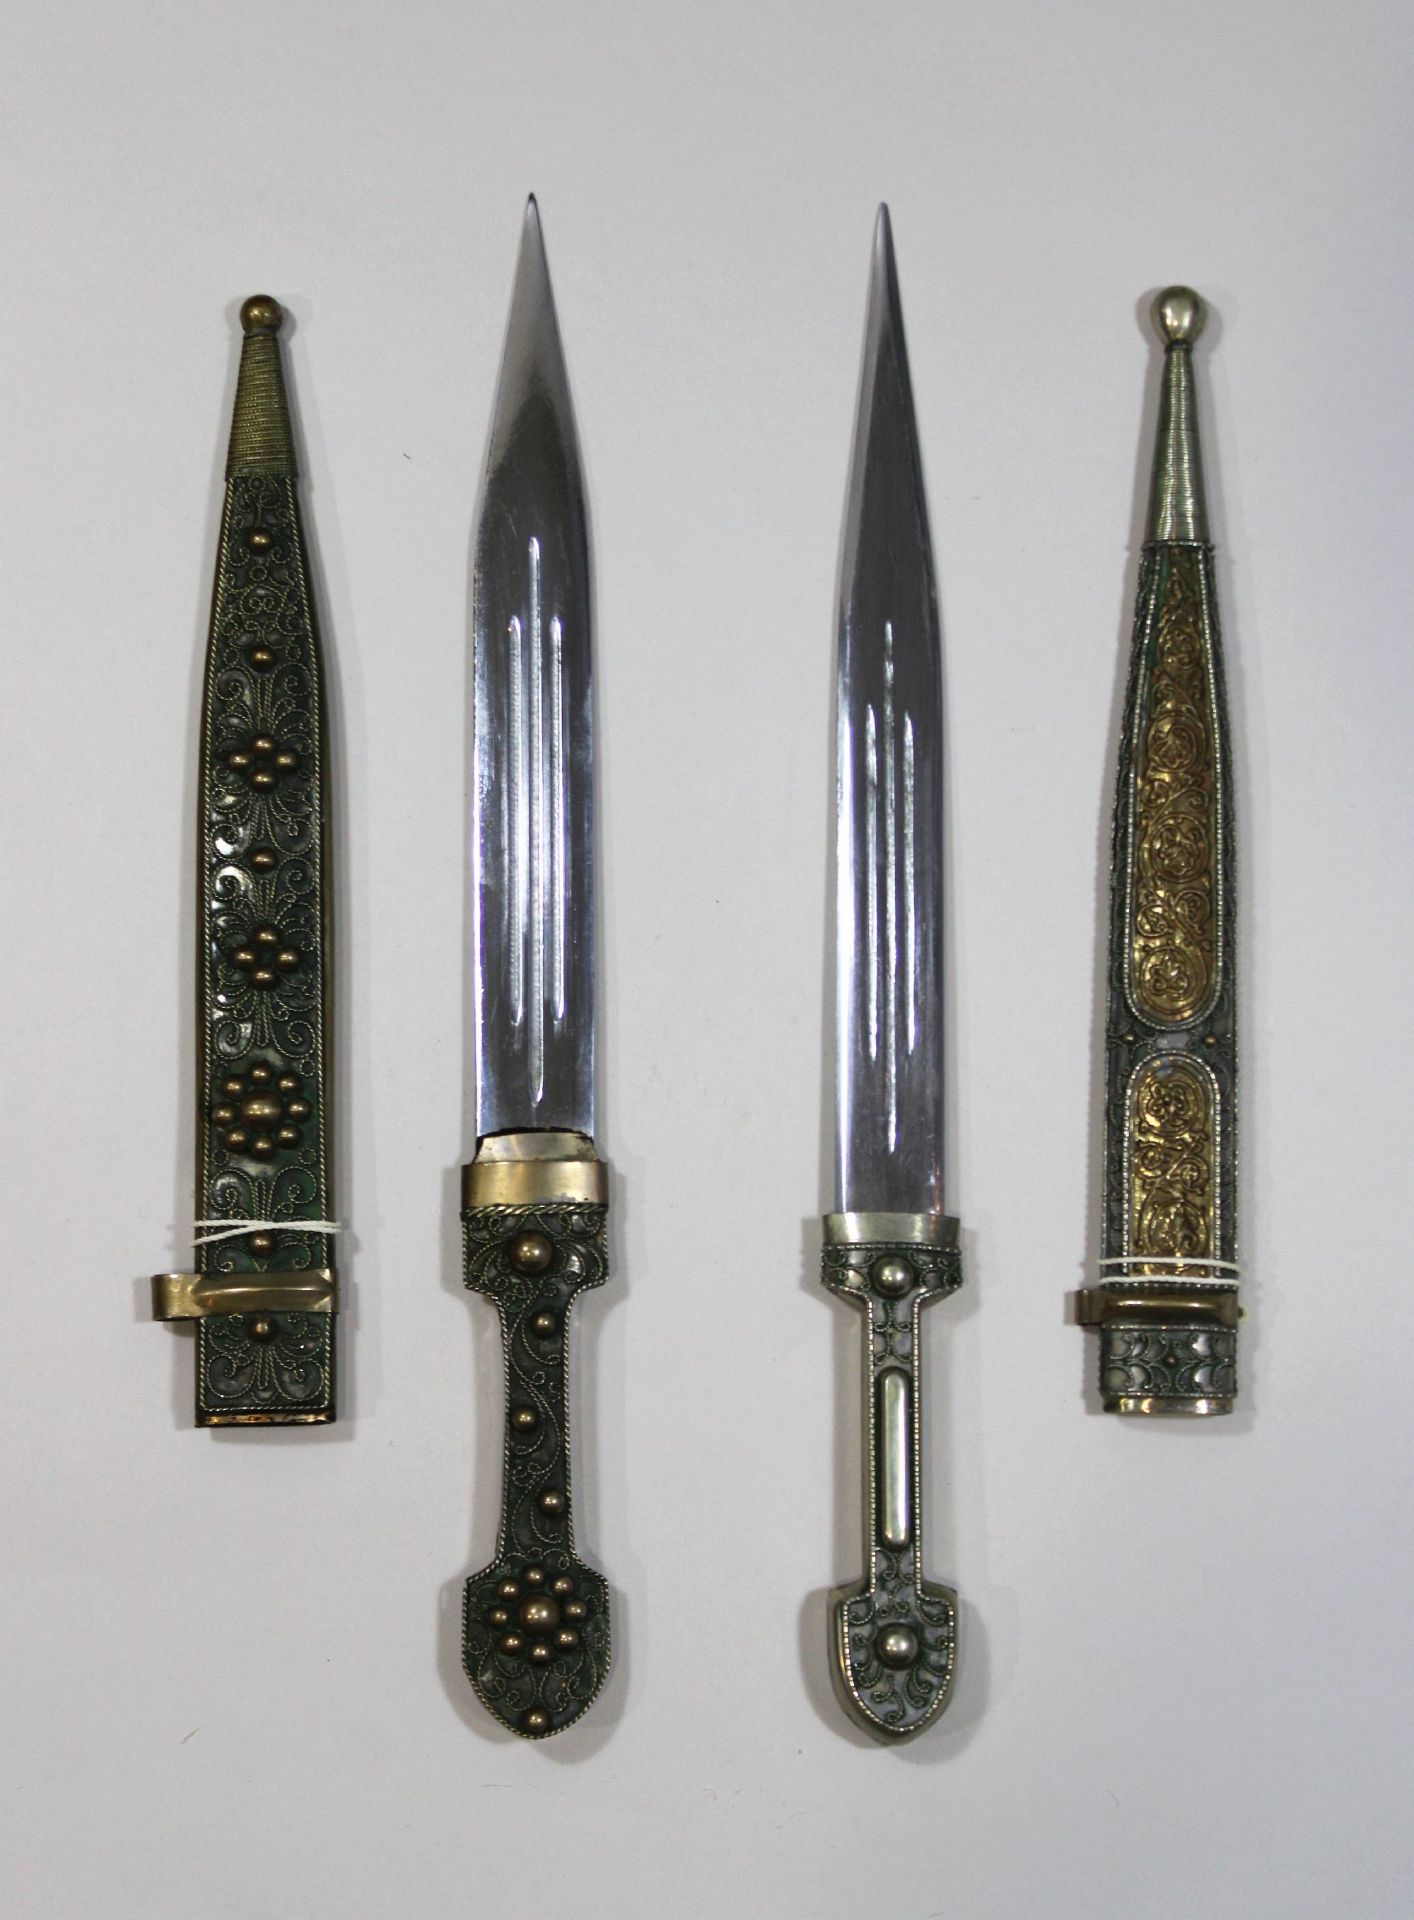 Zwei kaukasische Schwerter mit dekorierten Scheiden und Griffen, Klingenlänge: vom 26 bis 28 cm,